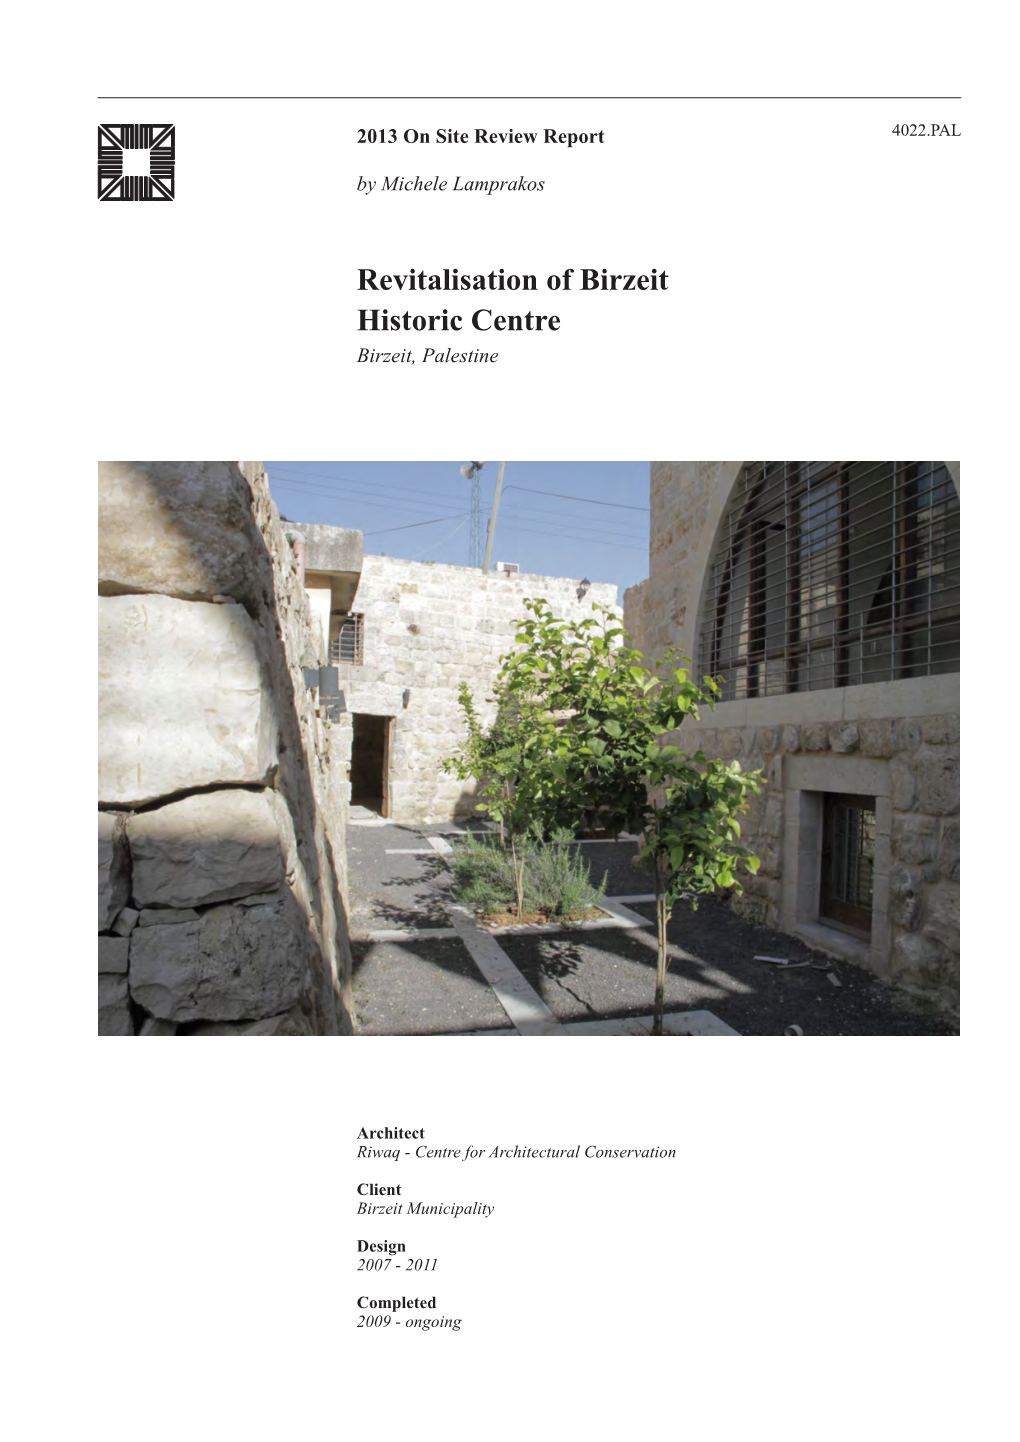 Revitalisation of Birzeit Historic Centre Birzeit, Palestine